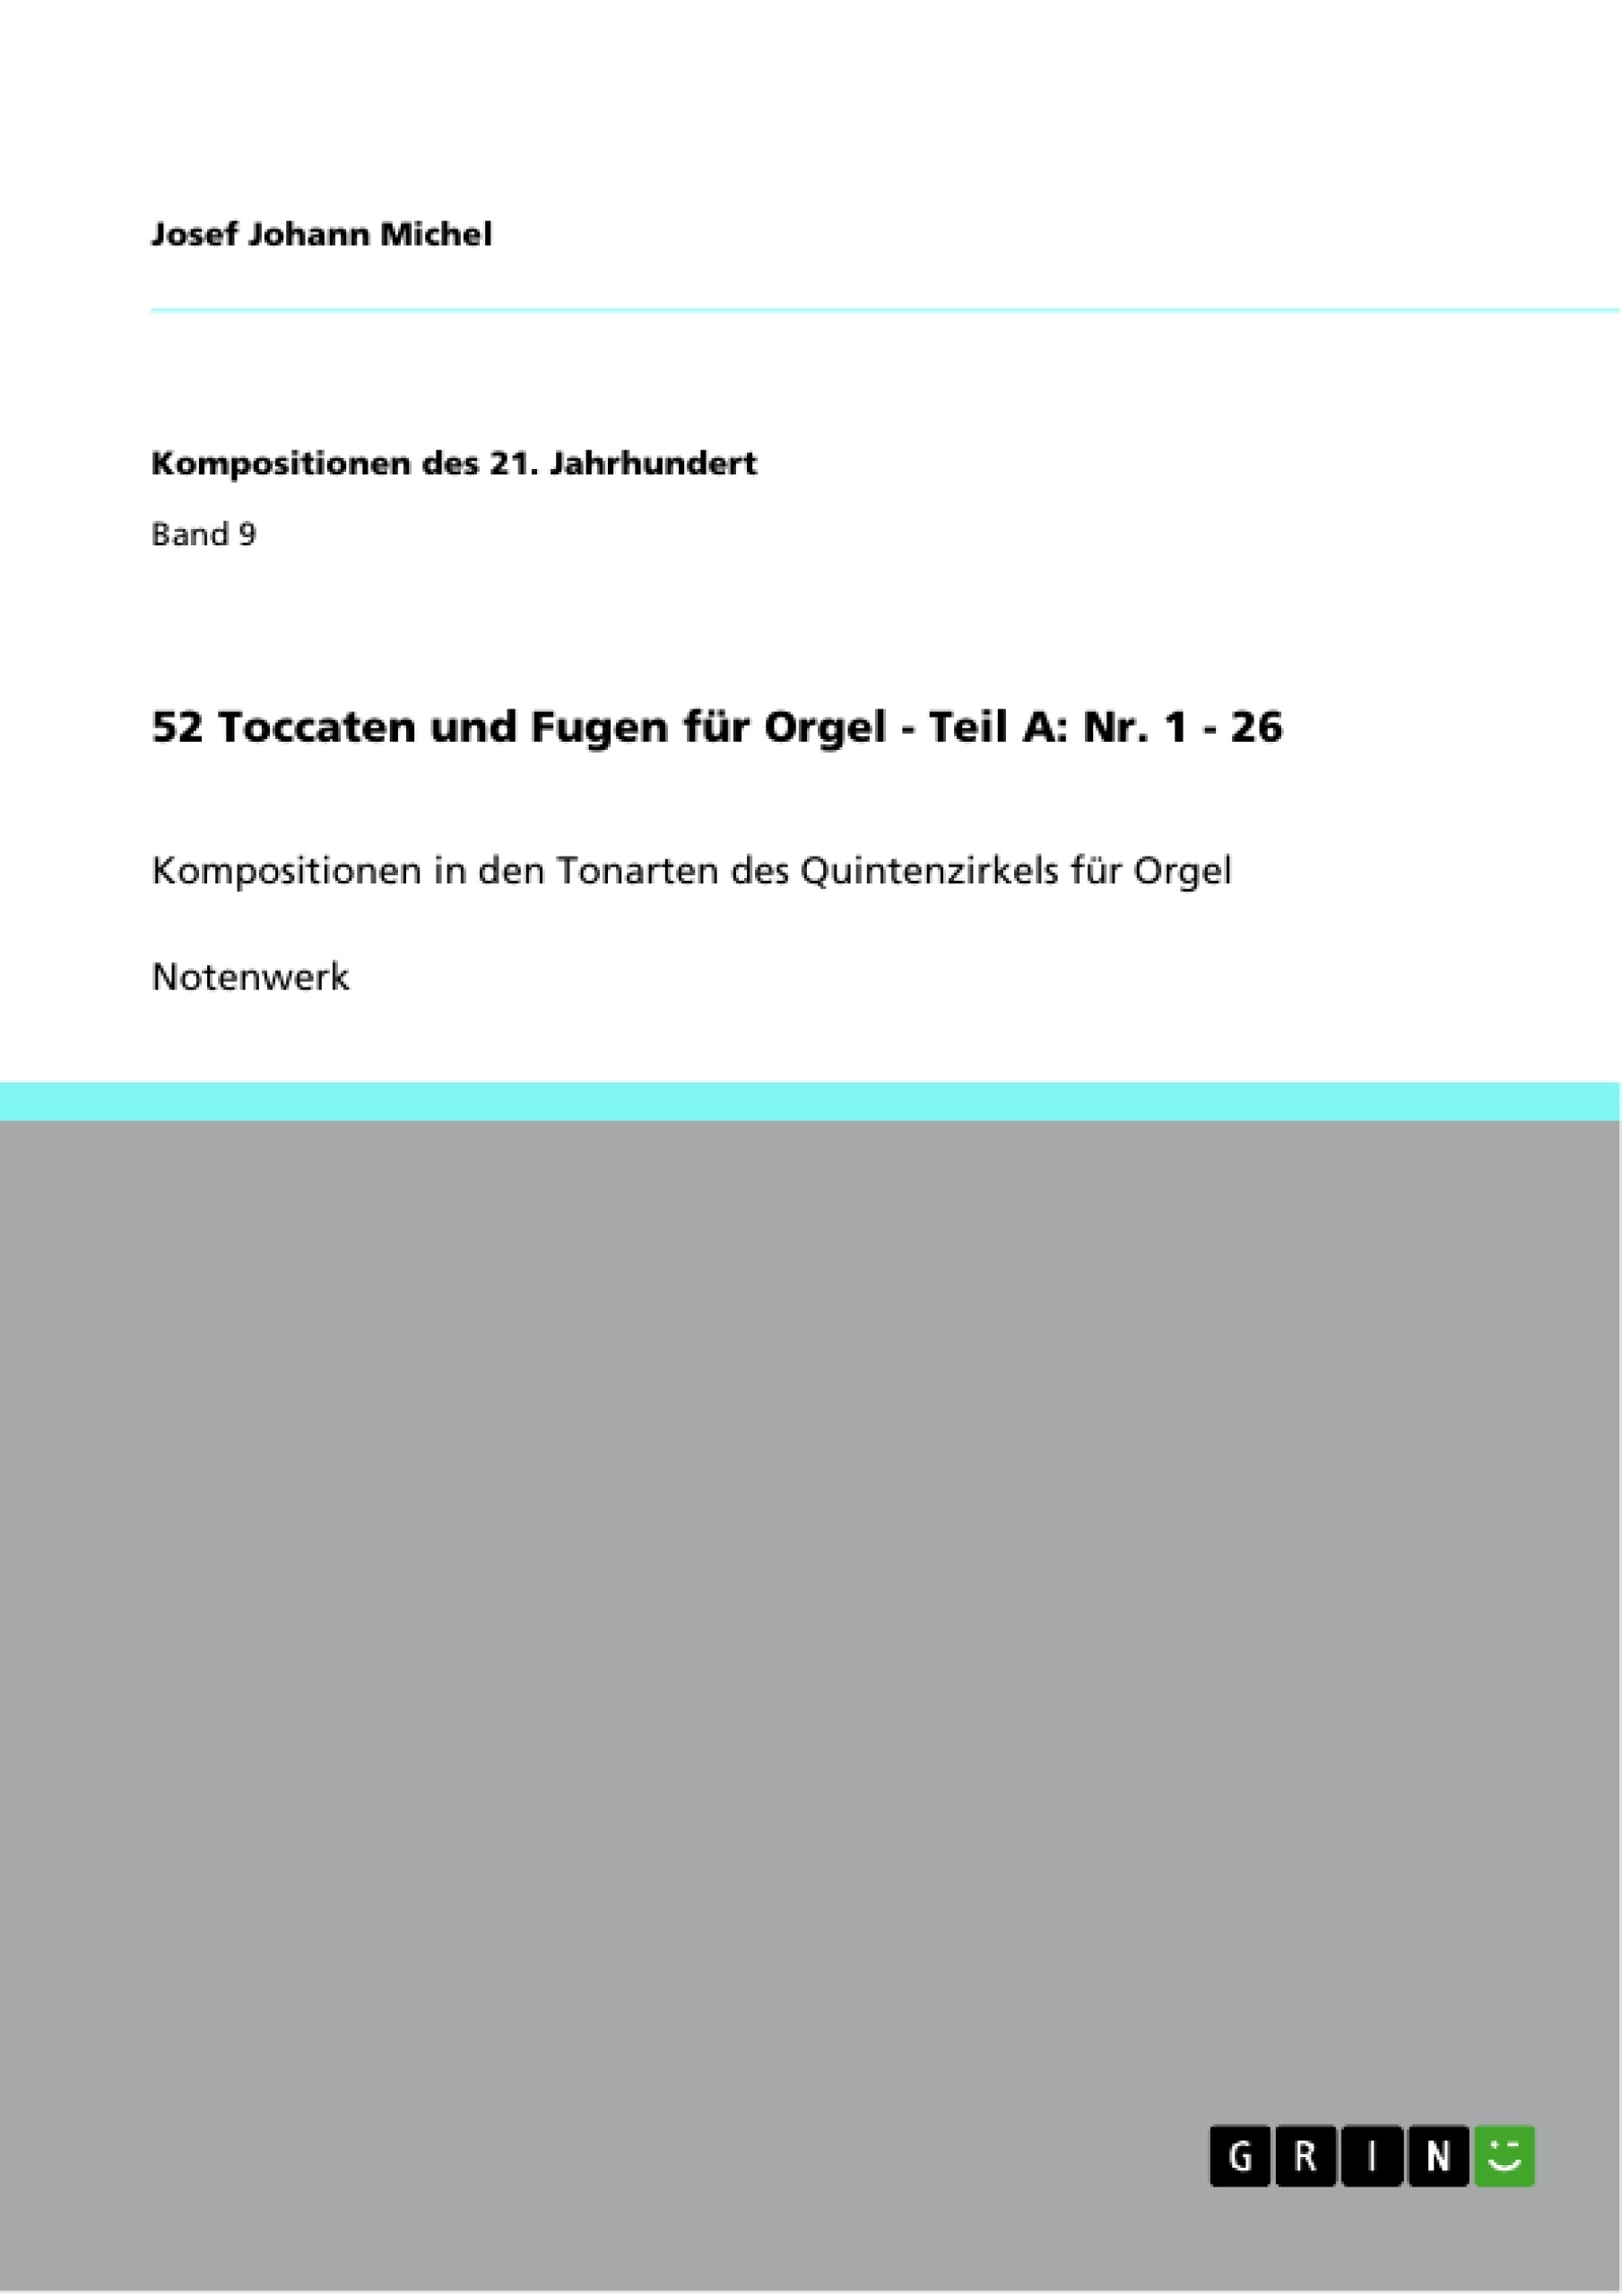 Titre: 52 Toccaten und Fugen für Orgel - Teil A: Nr. 1 - 26